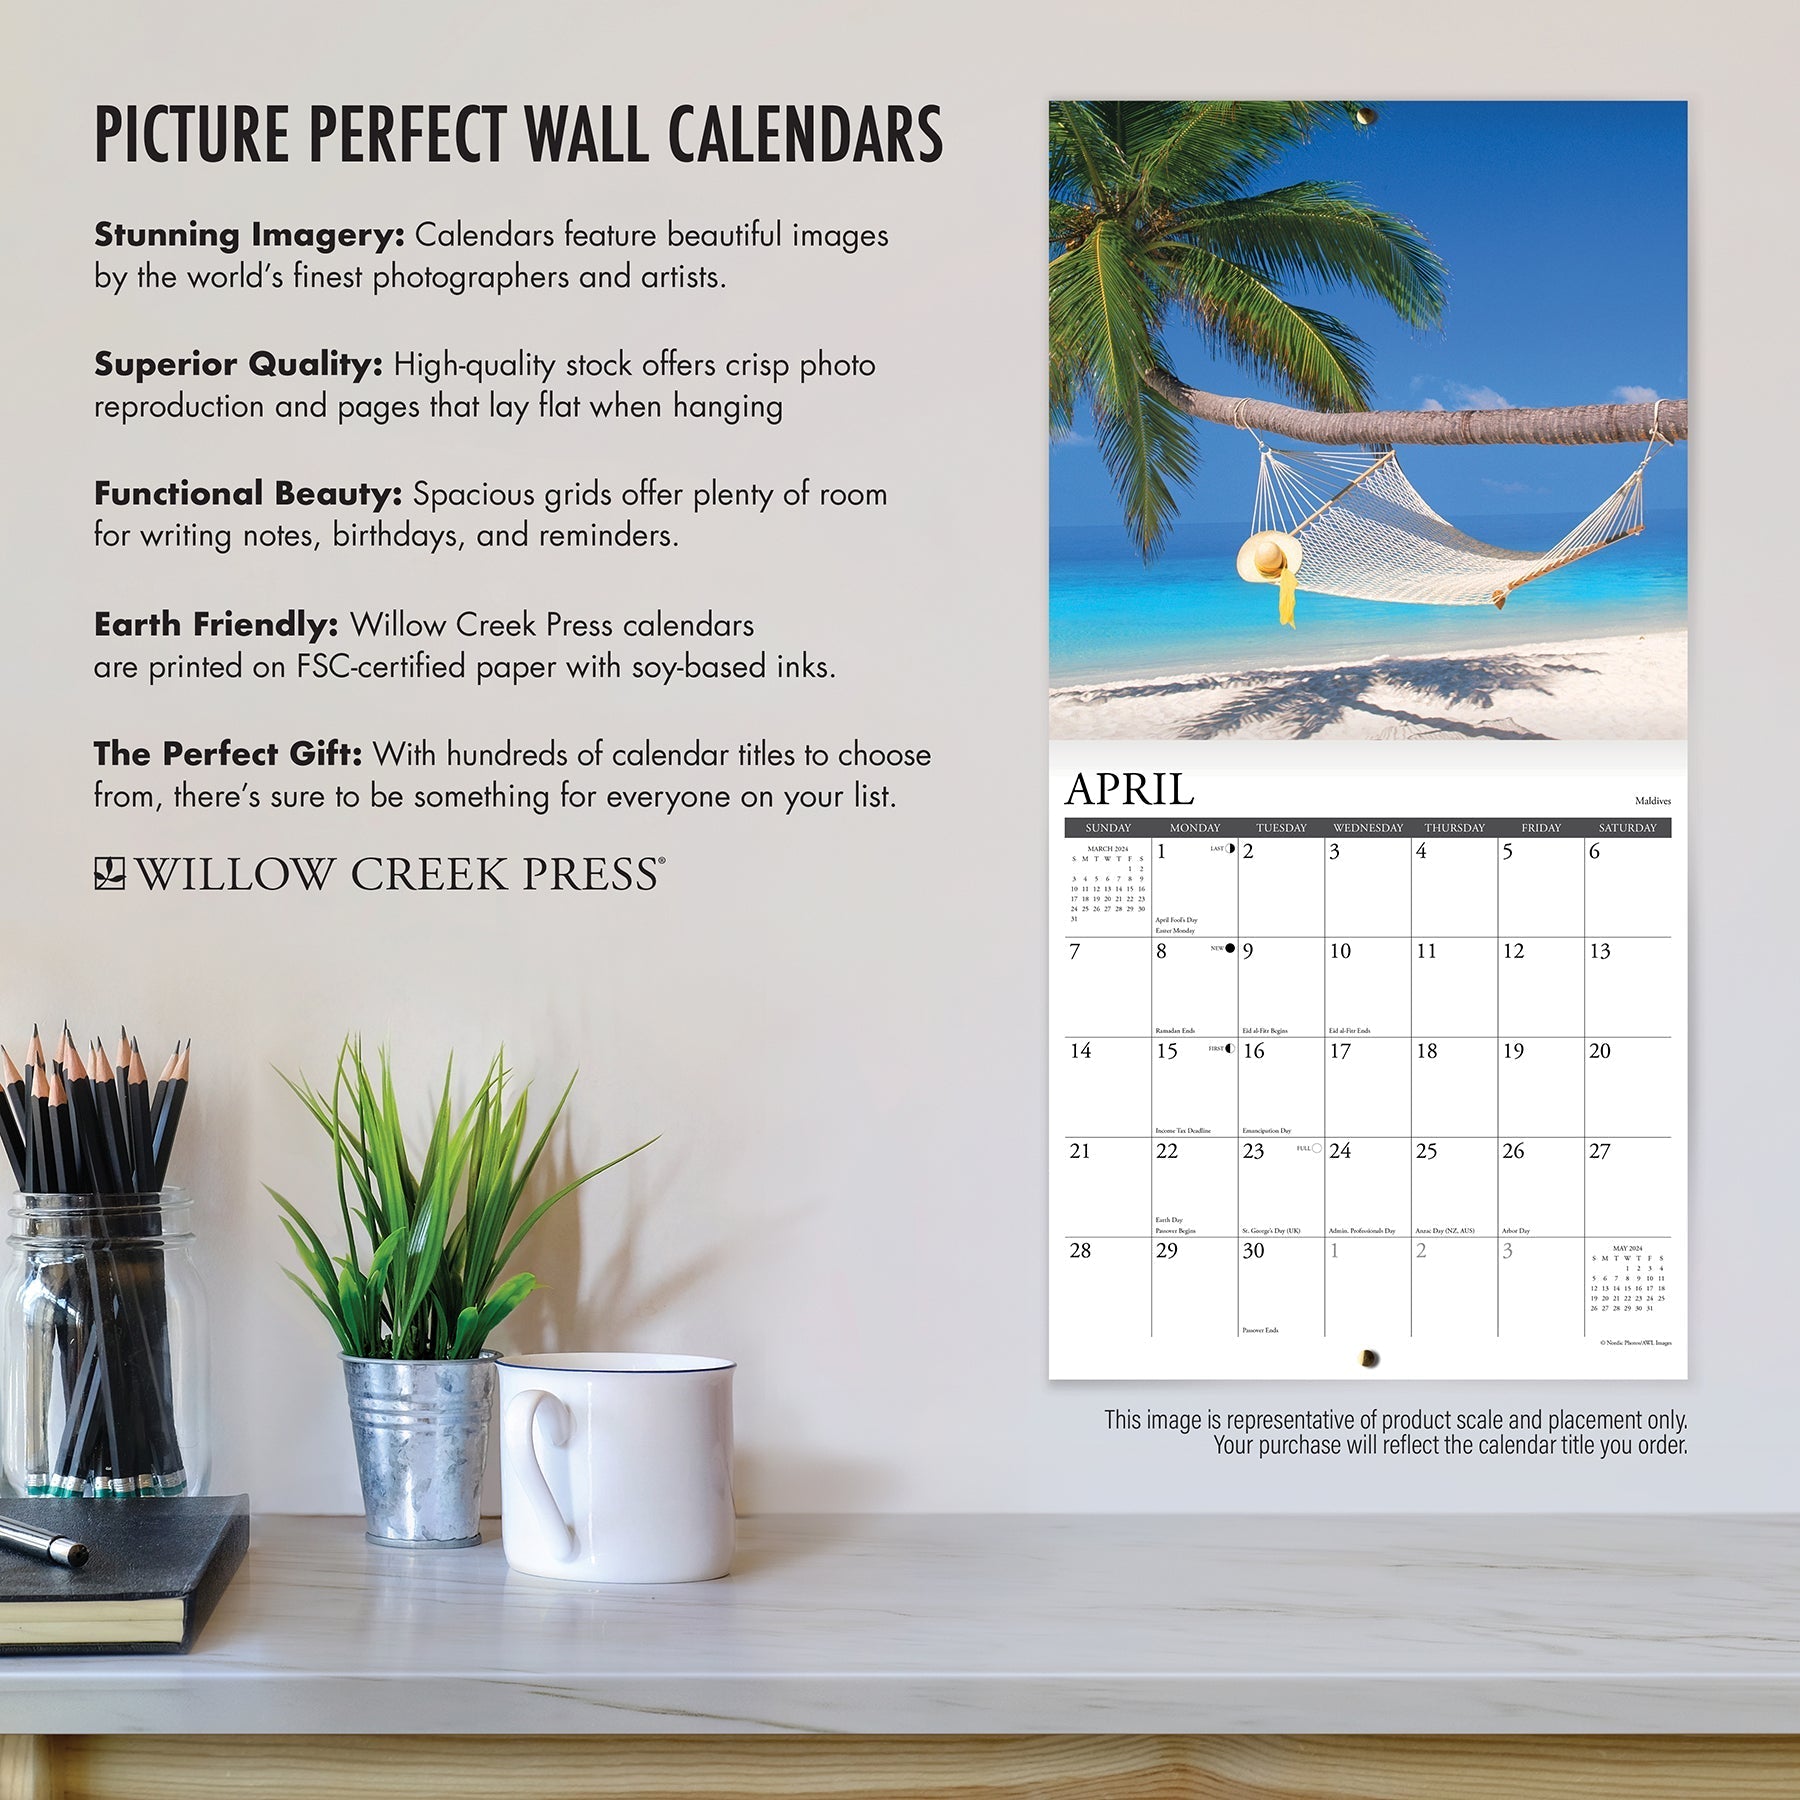 2024 Crusoe the Celebrity Dachshund - Wall Calendar